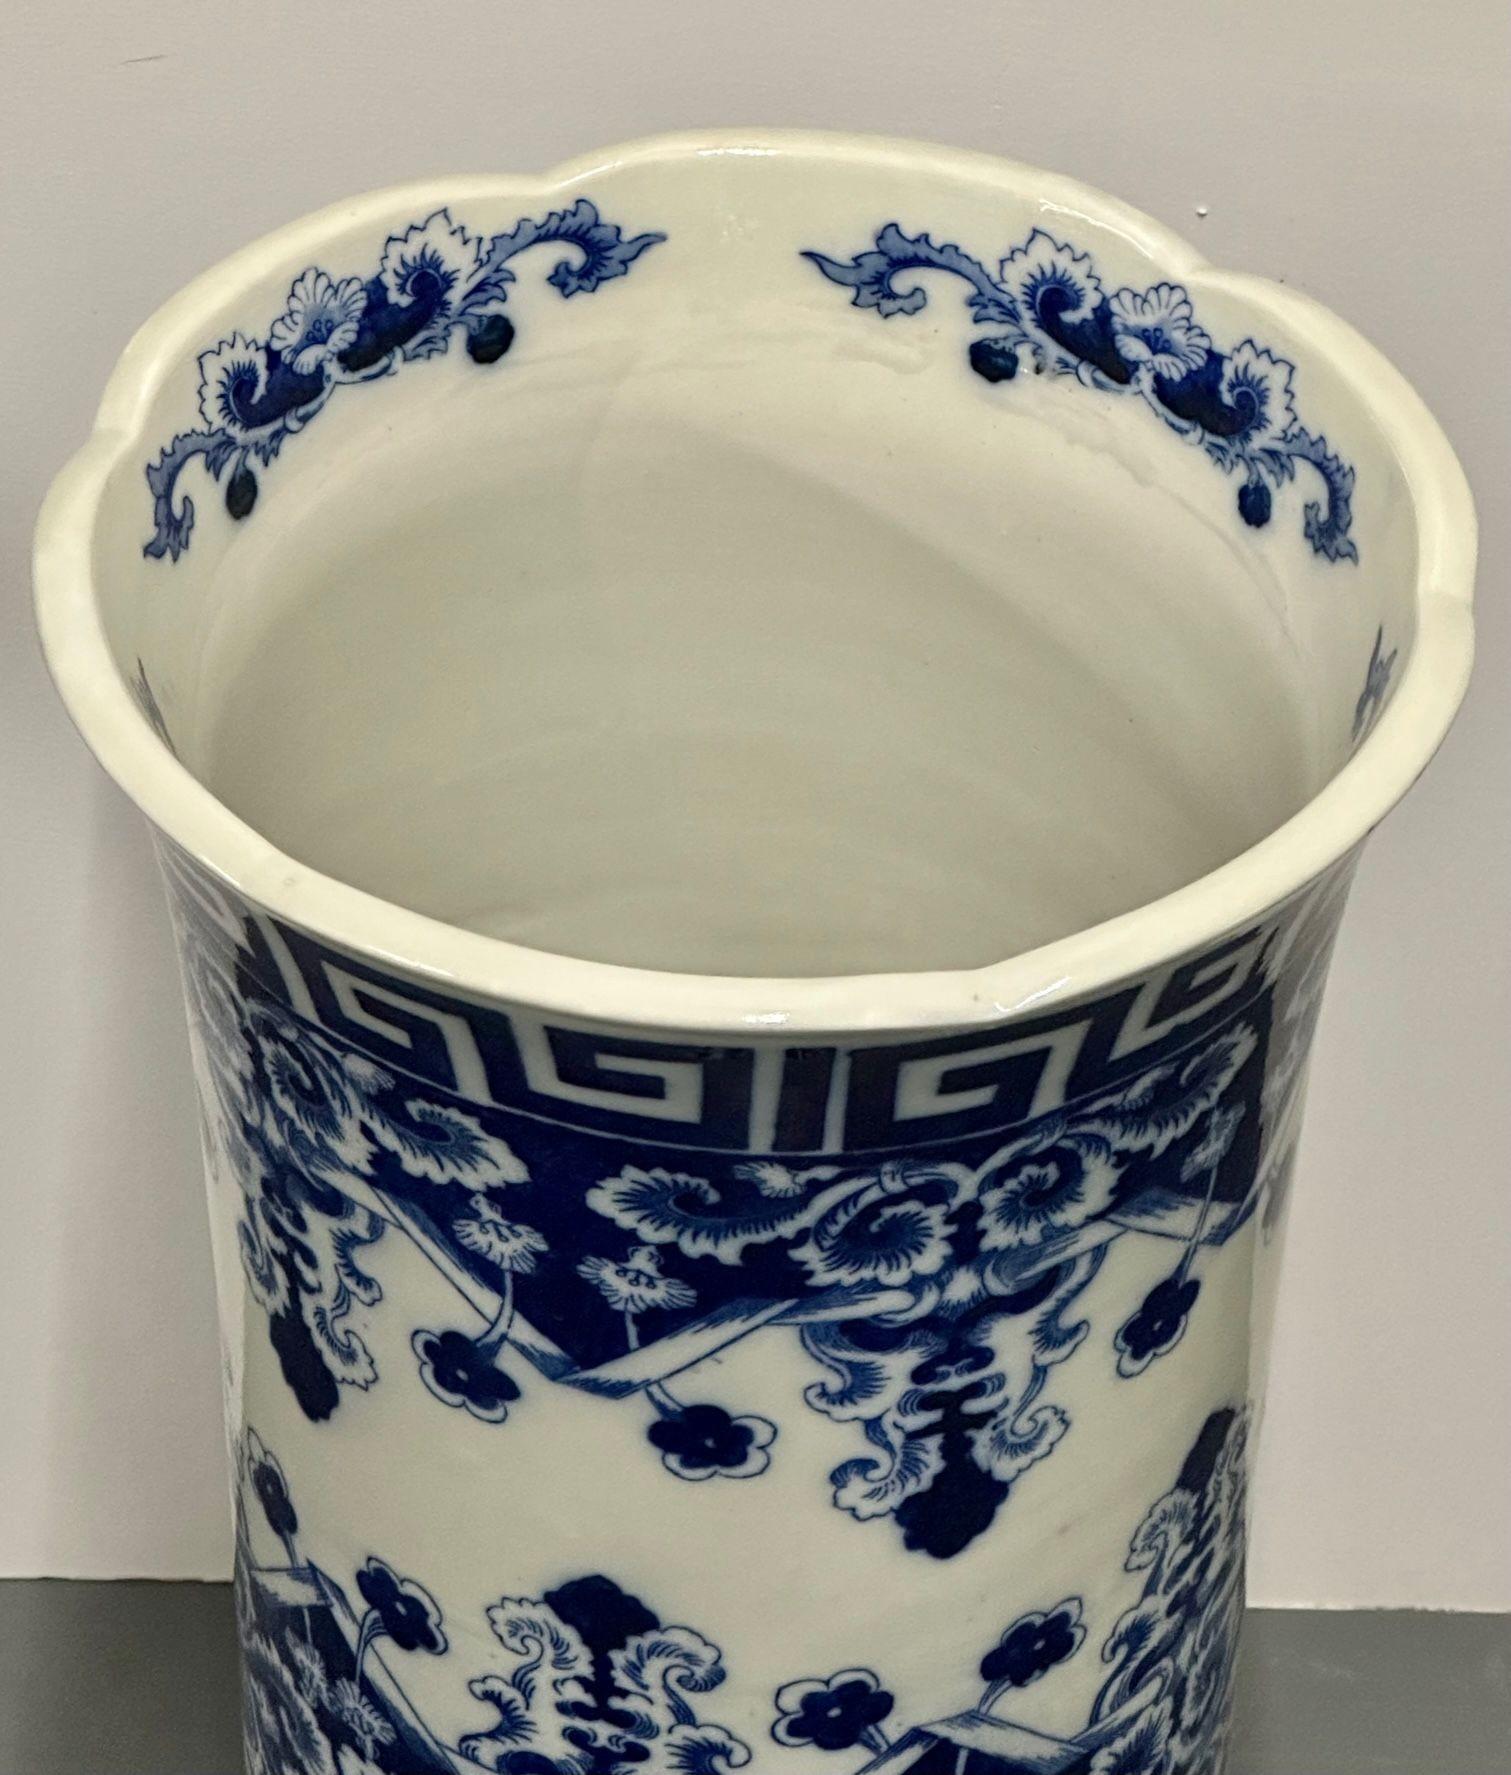 Orientalisches Porzellan Flow Blau Weiß Umbrella Stand, Große Vase, Floral dekoriert (Chinesischer Export) im Angebot